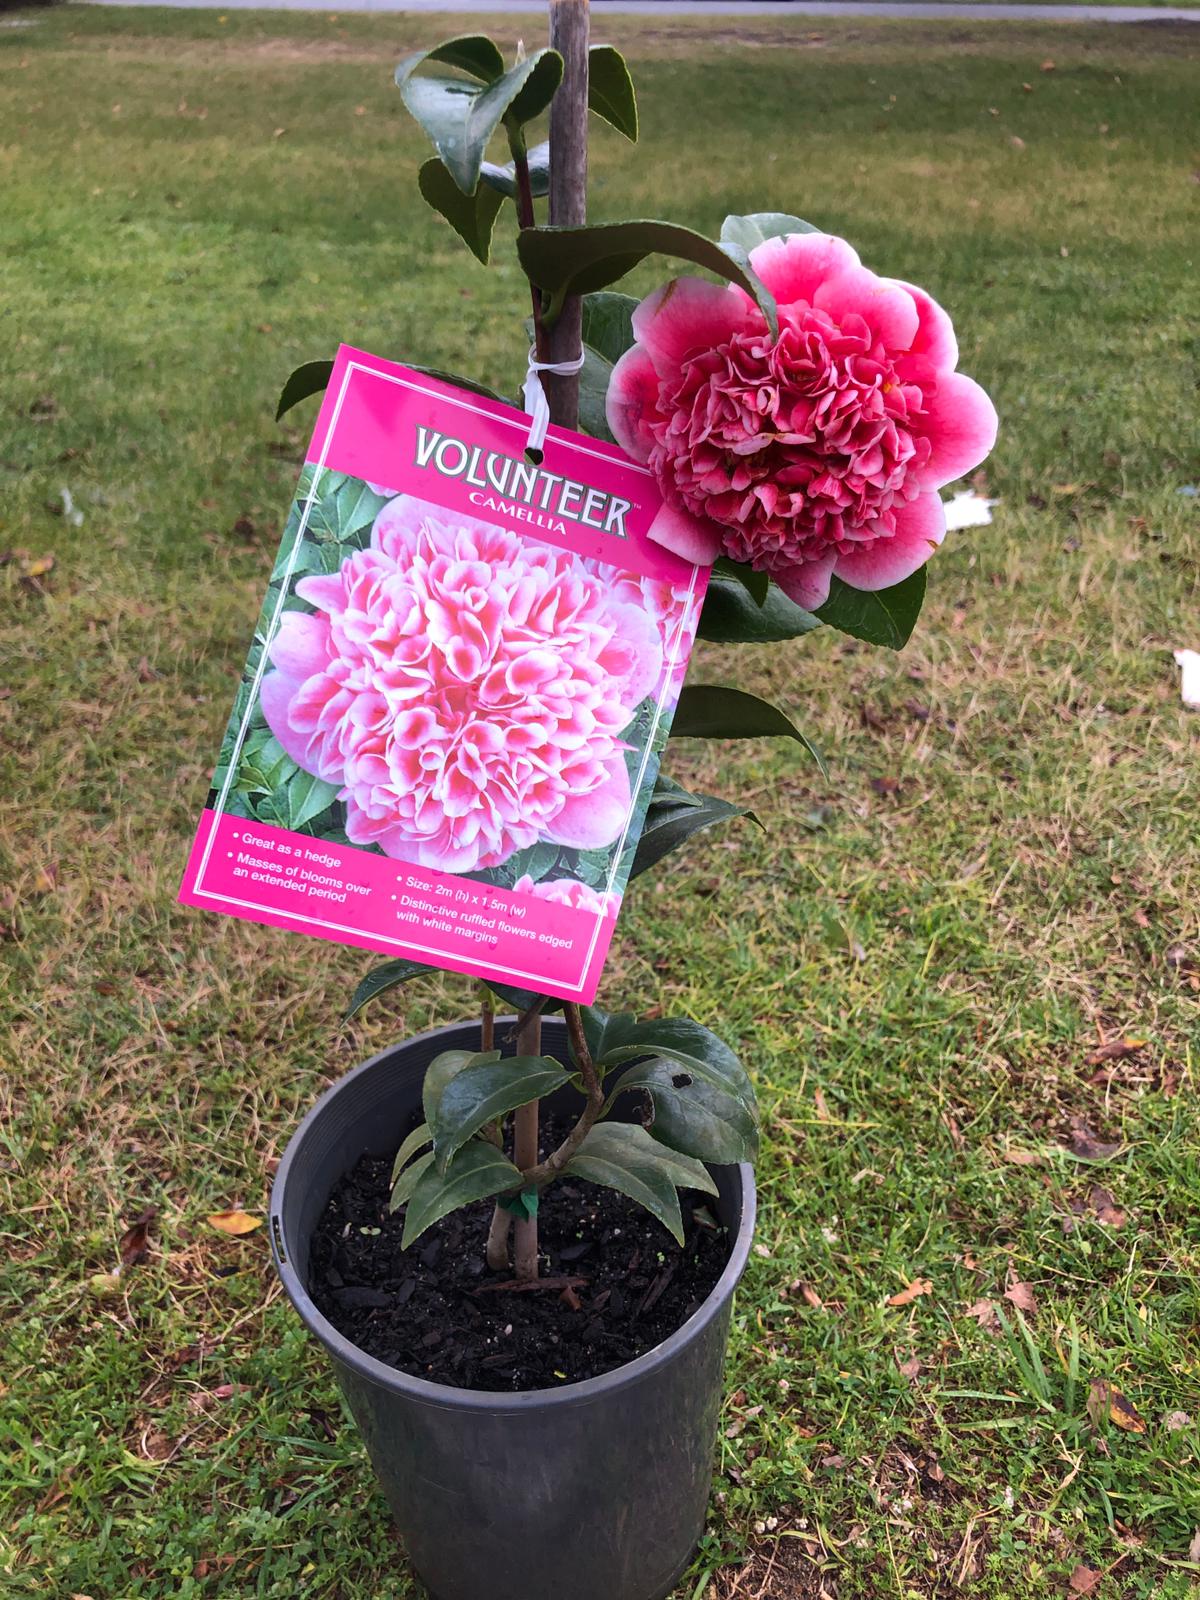 Camellia Volanteer